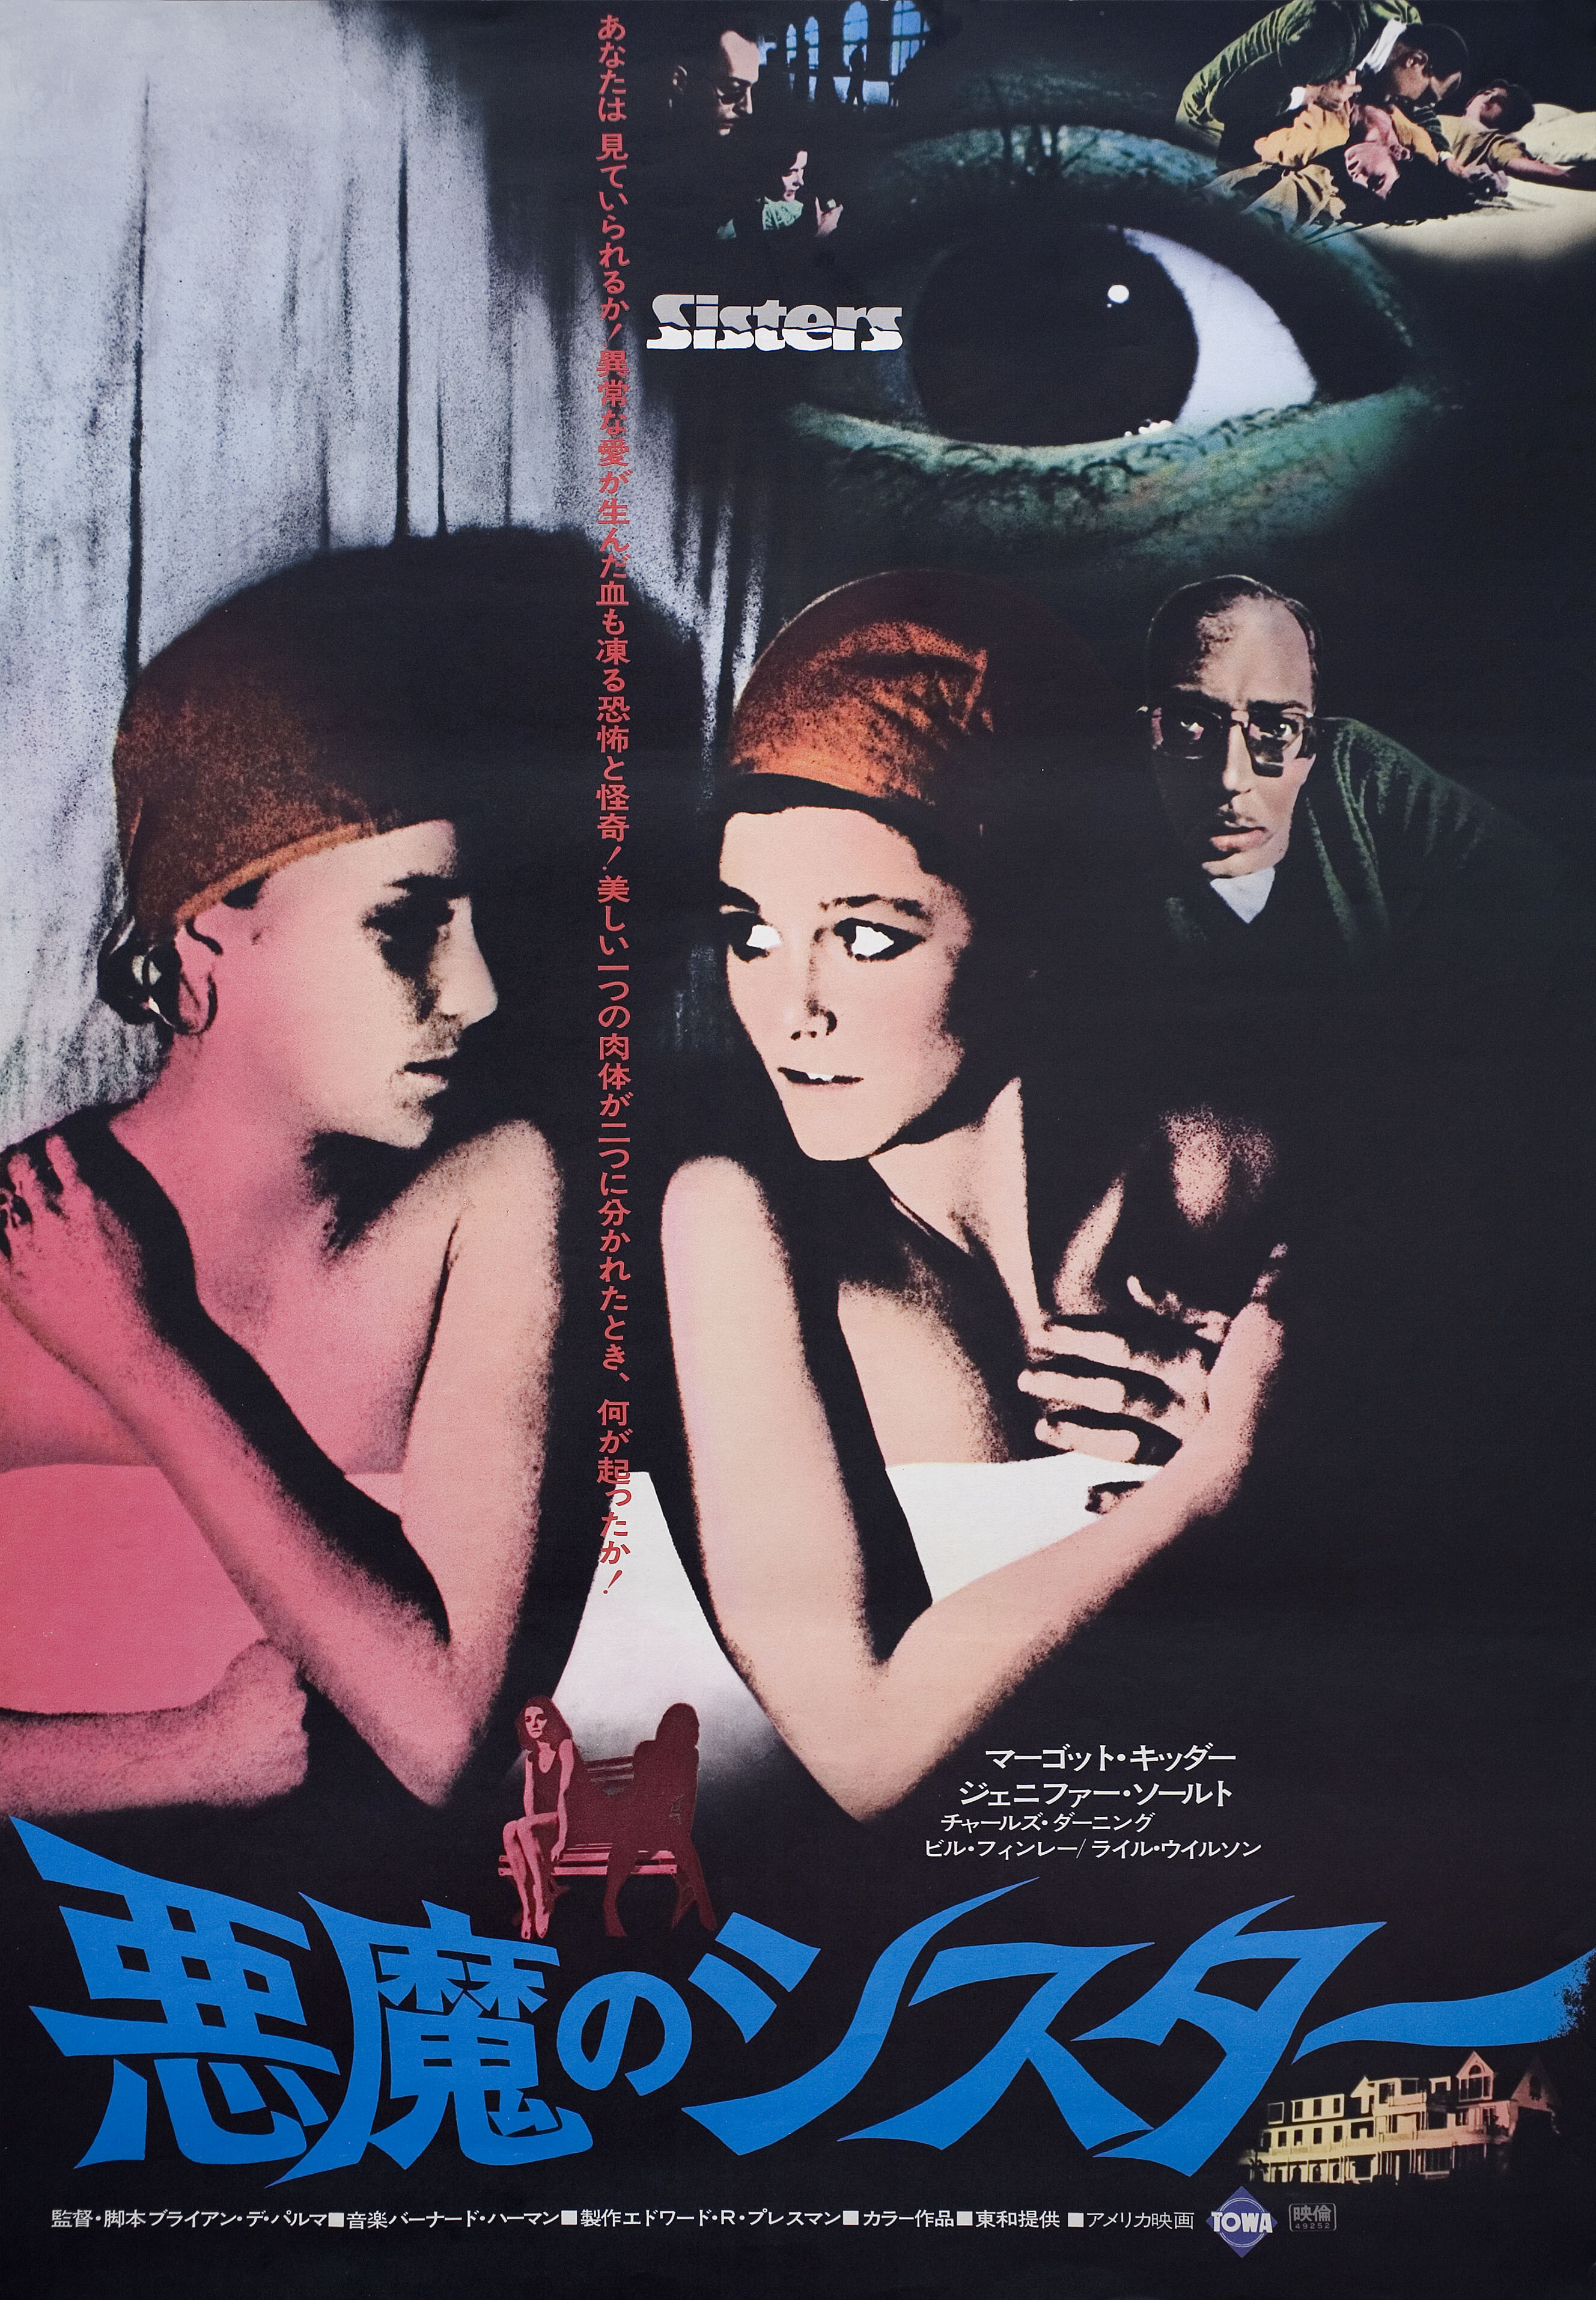 Сёстры (Sisters, 1973), режиссёр Брайан Де Пальма, японский постер к фильму (ужасы, 1976 год)